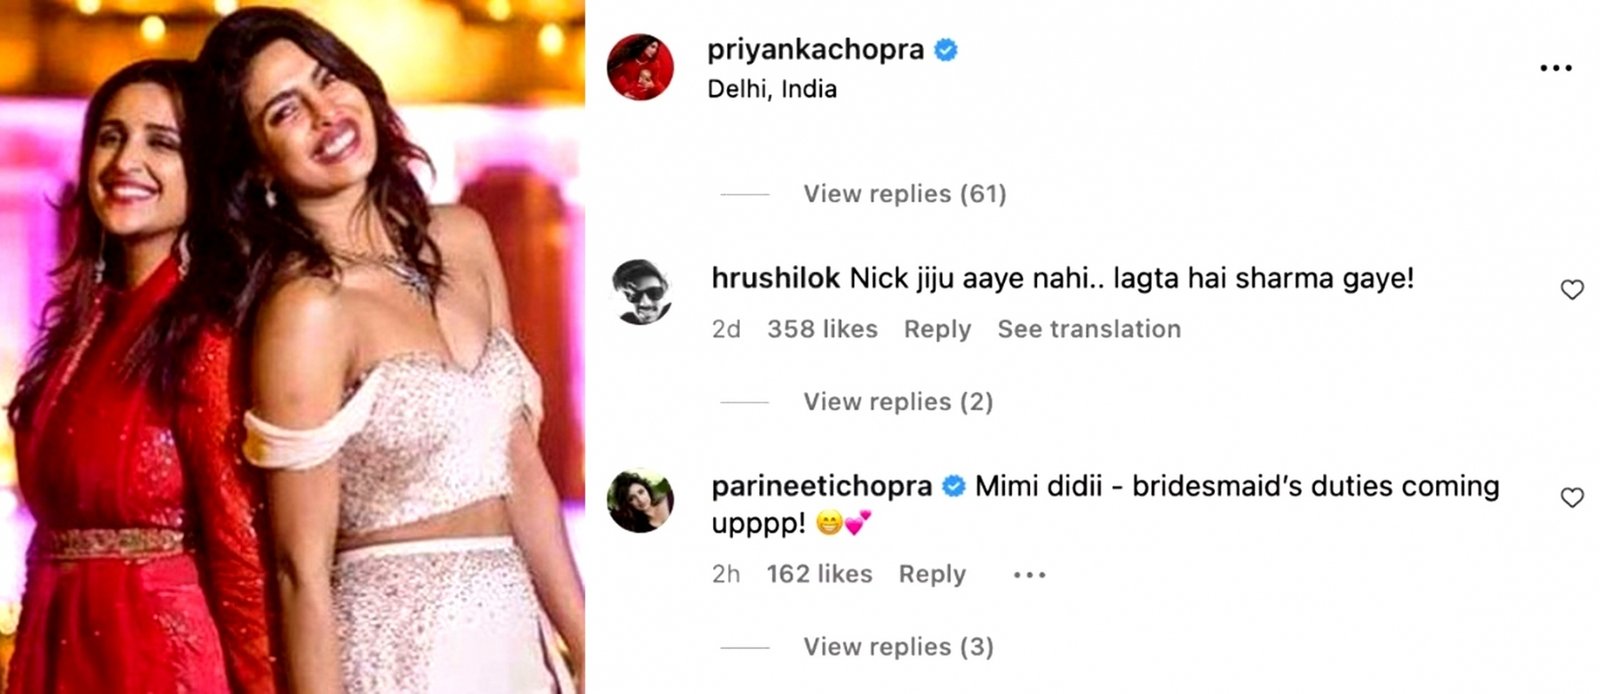 Parineeti Chopra tells Priyanka